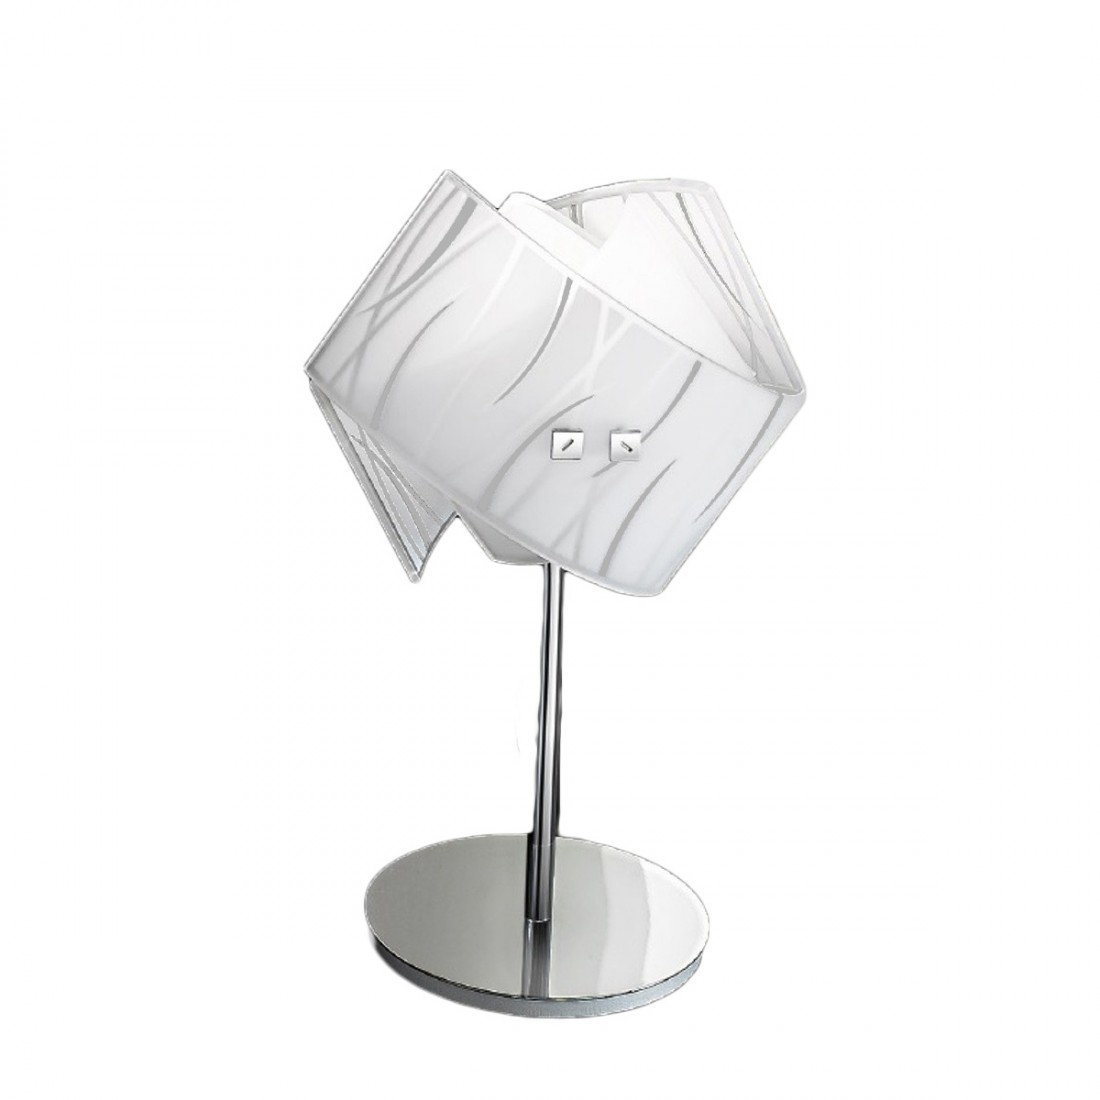 Abat-jour vetro serigrafato Gea Luce AGNESE LP LED lampada tavolo piccola bianco nero moderno interno E14